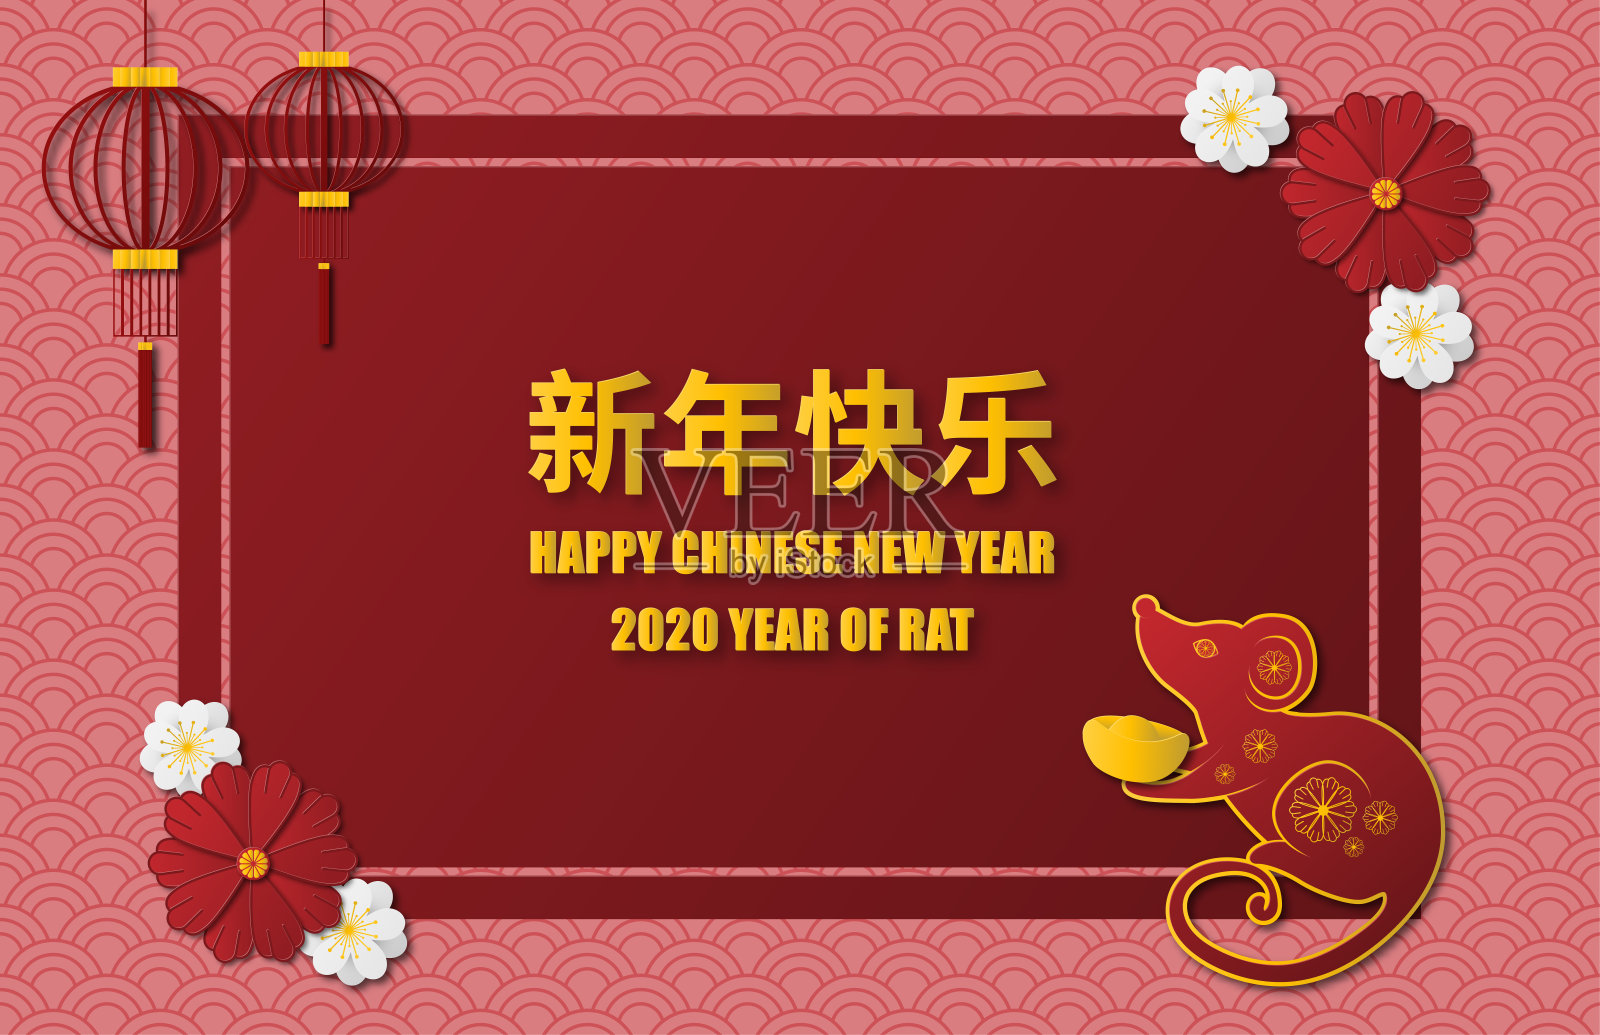 快乐中国2020年背景剪纸风格。年的老鼠。汉字意味着新年快乐。海报，背景，横幅，壁纸。设计模板素材